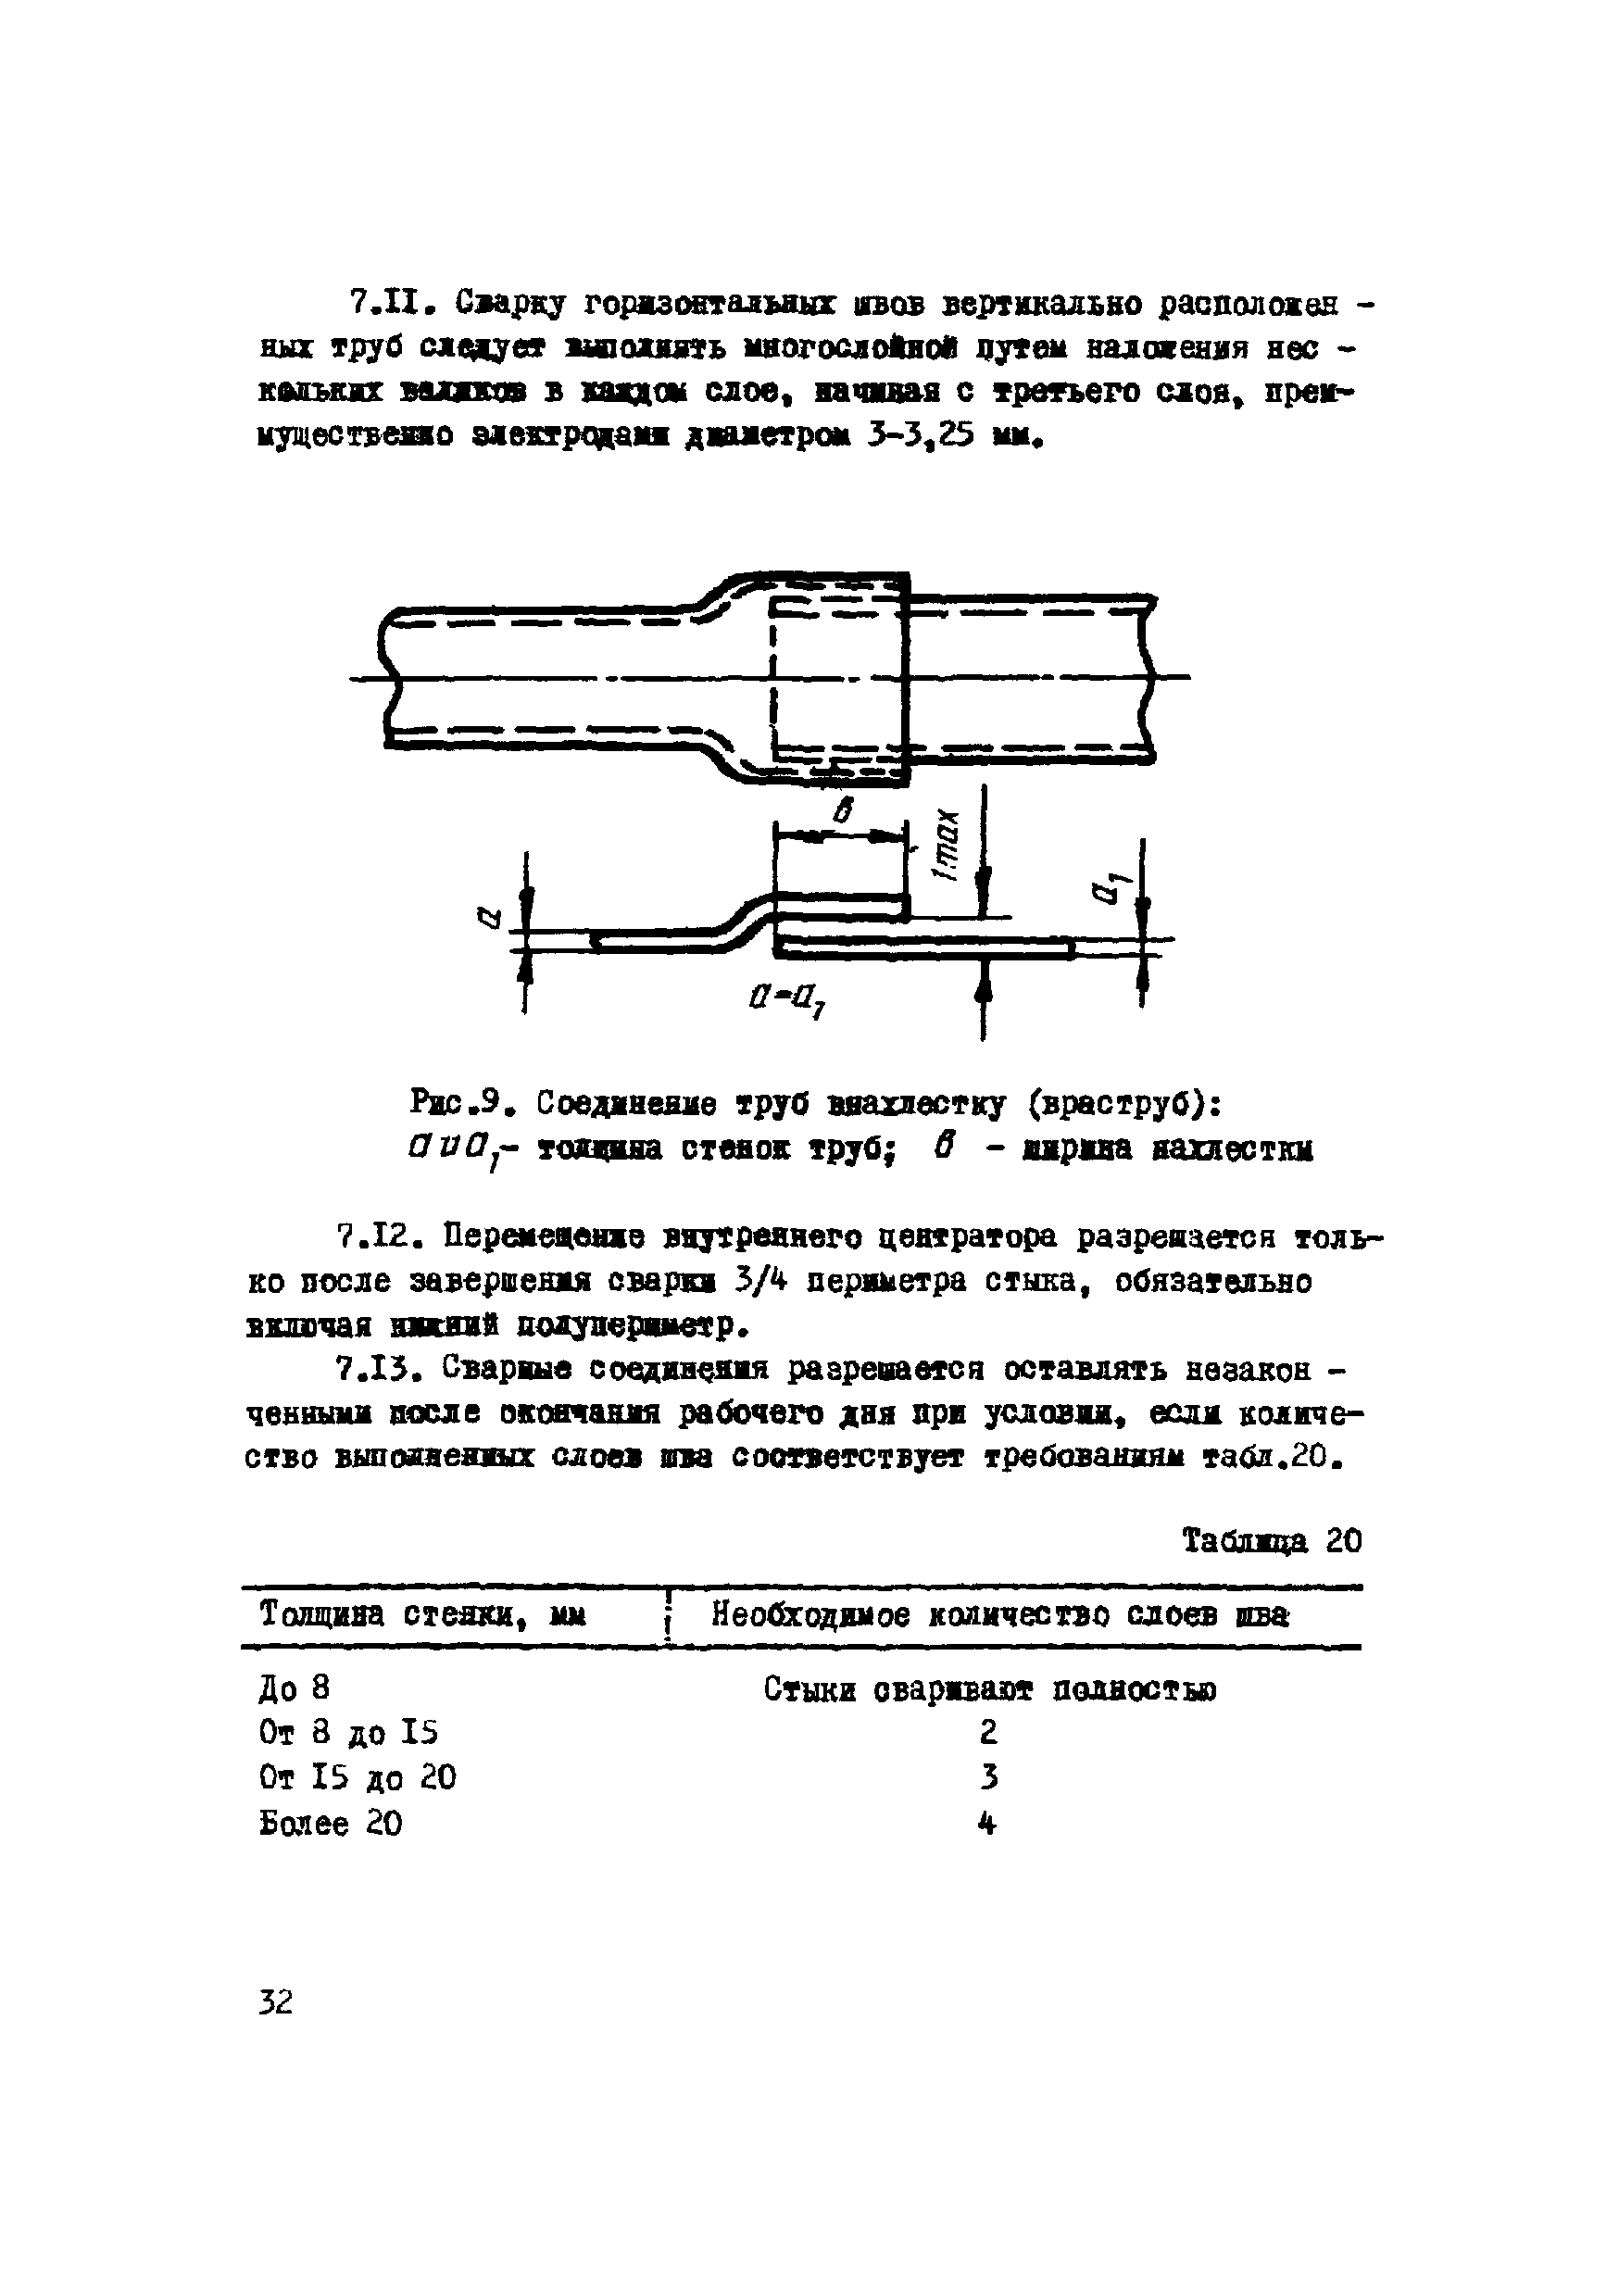 ВСН 2-120-80/Миннефтегазстрой